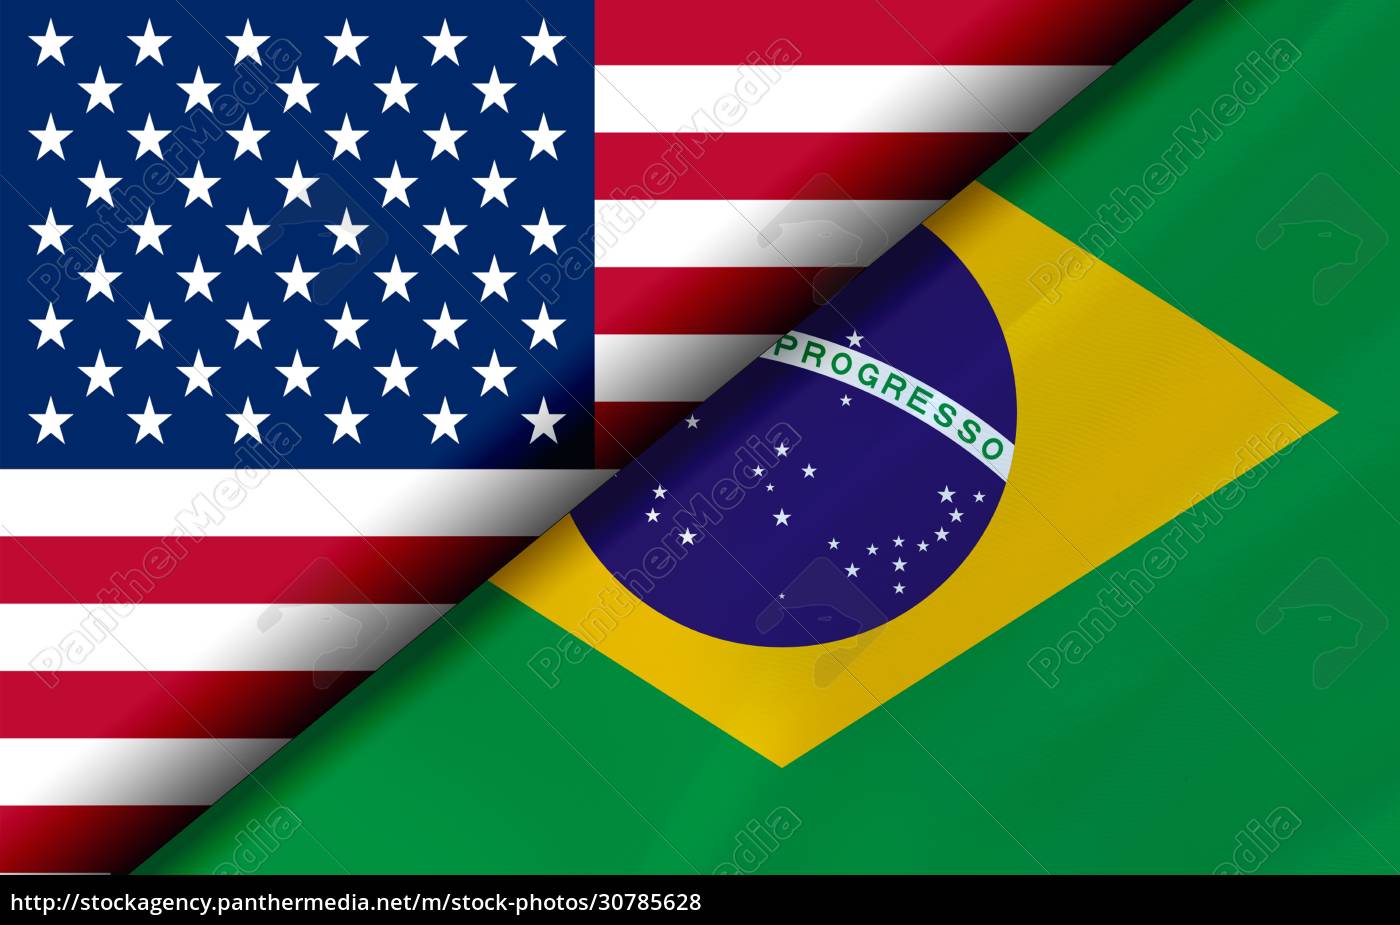 Bandeiras dos EUA e do Brasil divididas diagonalmente - Stockphoto